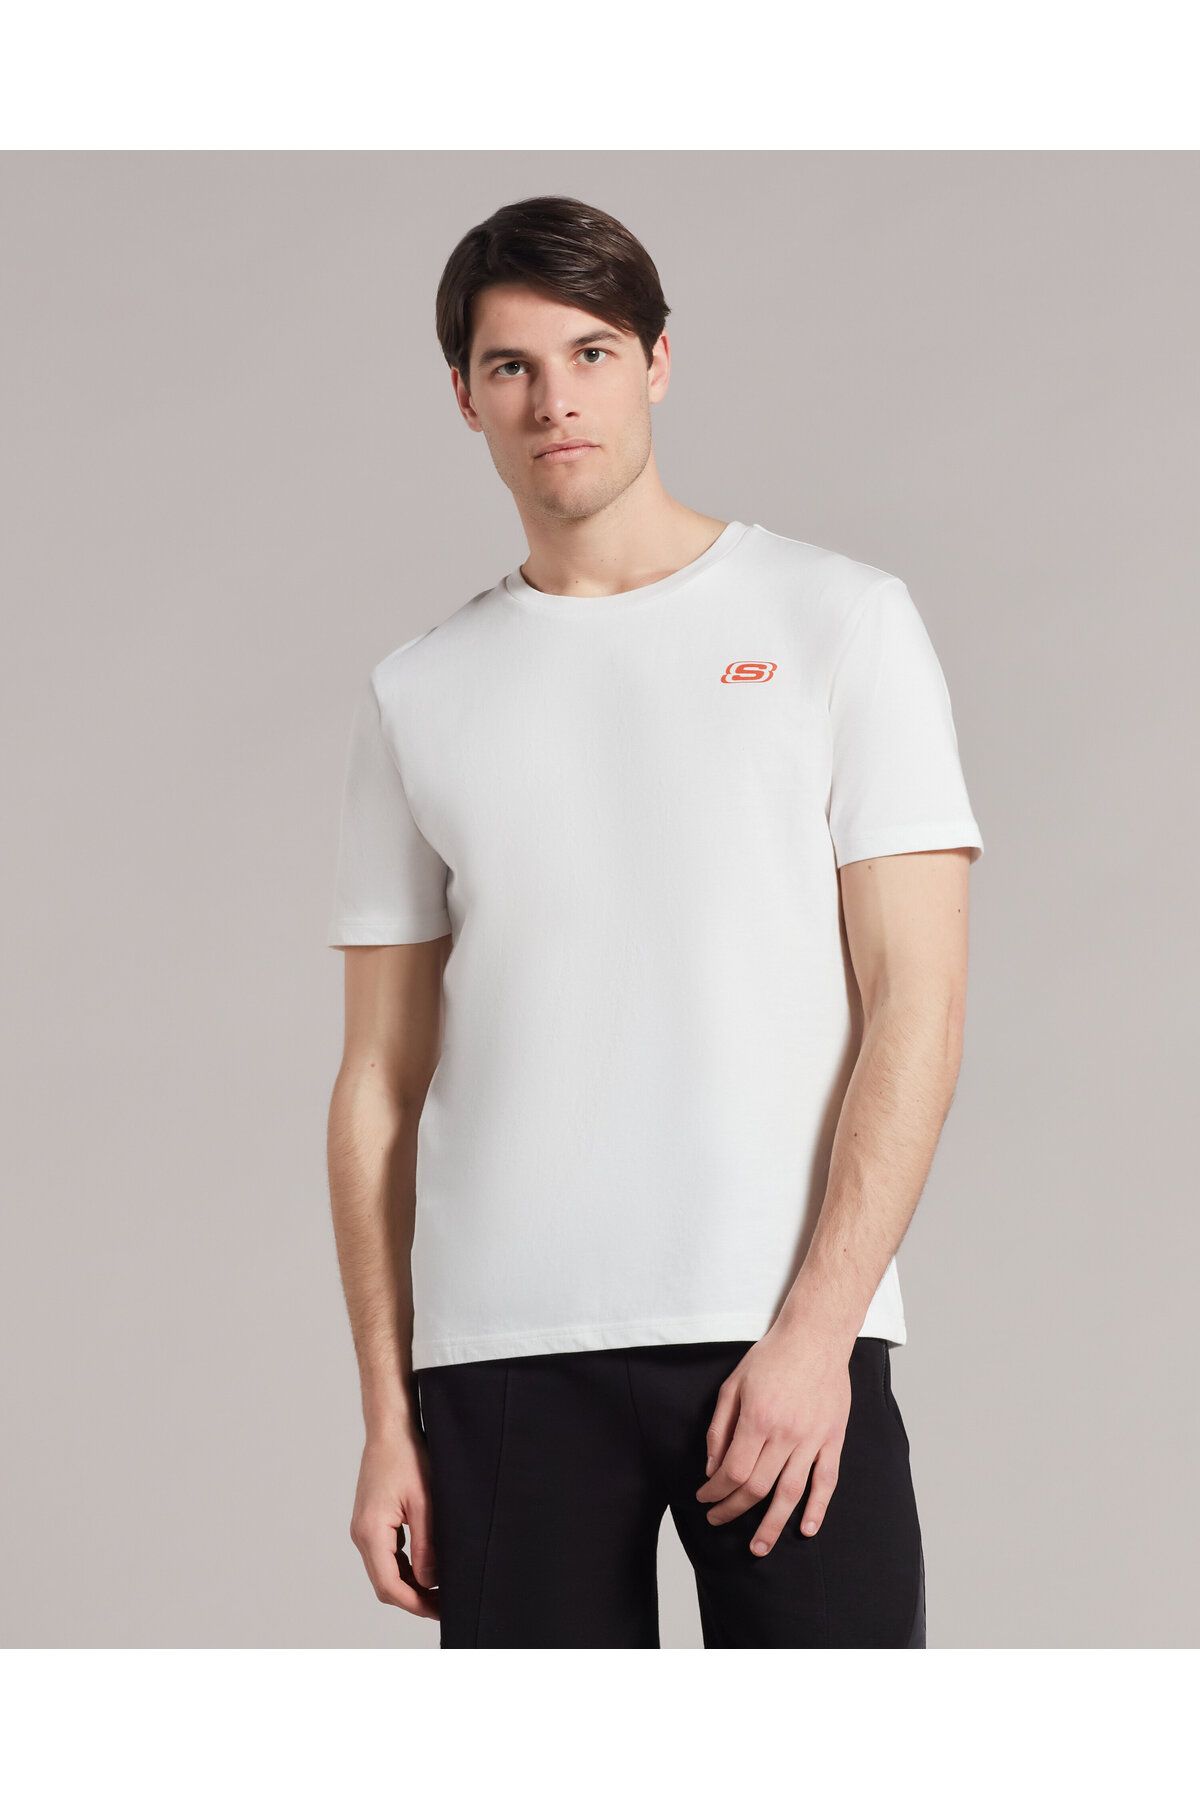 Skechers M Graphic Tee Crew Neck T-shirt Erkek Beyaz Tshirt S231280-102